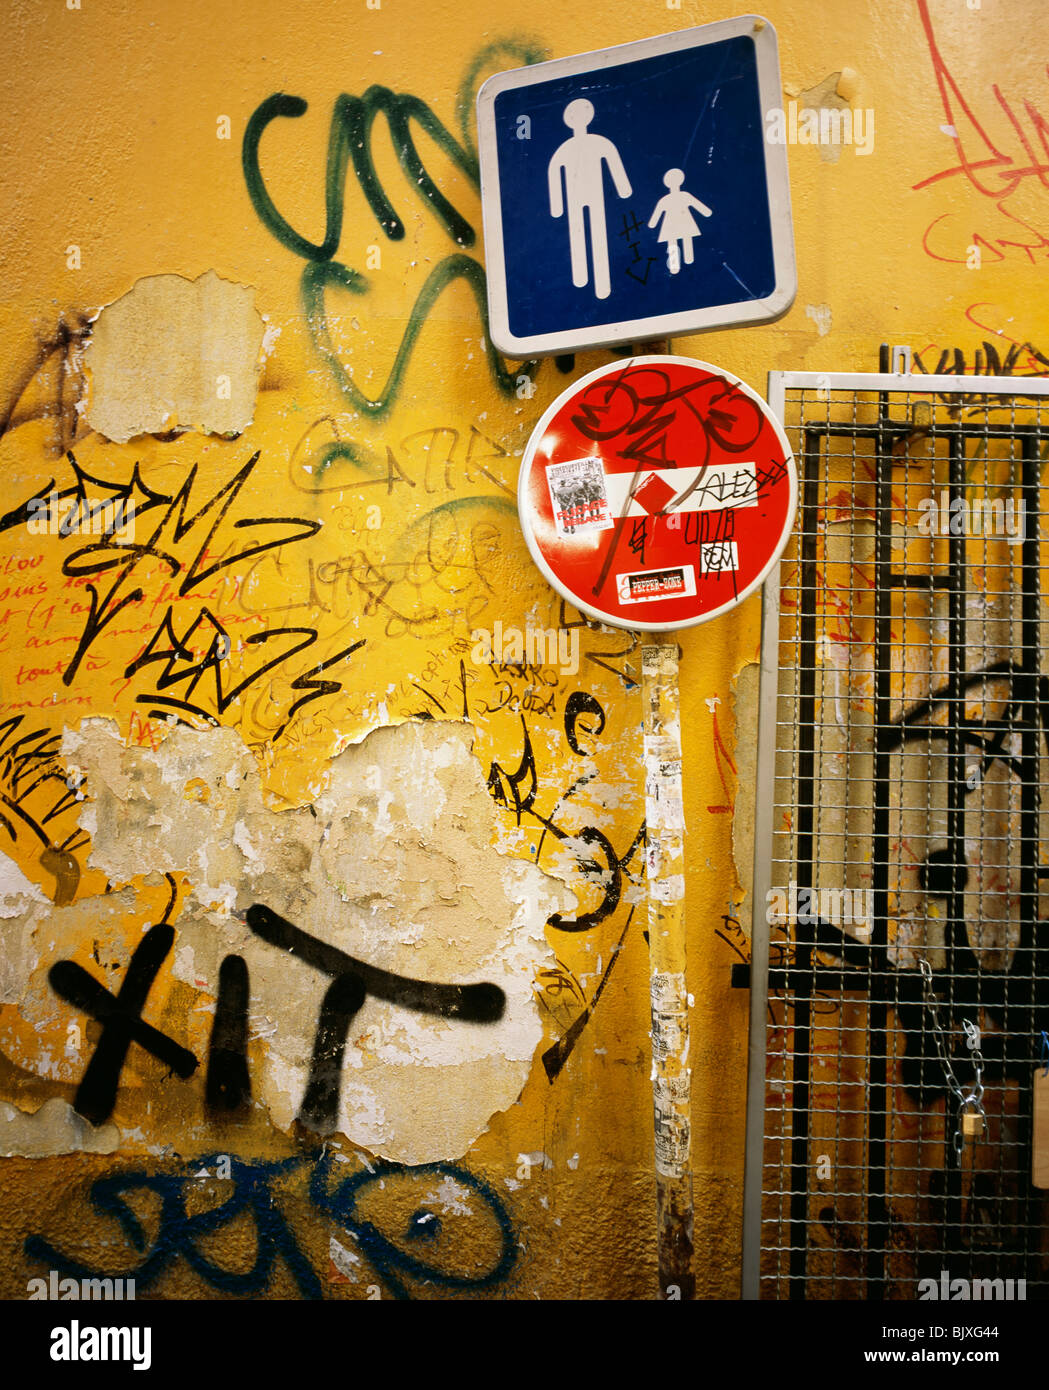 Graffiti on wall Stock Photo